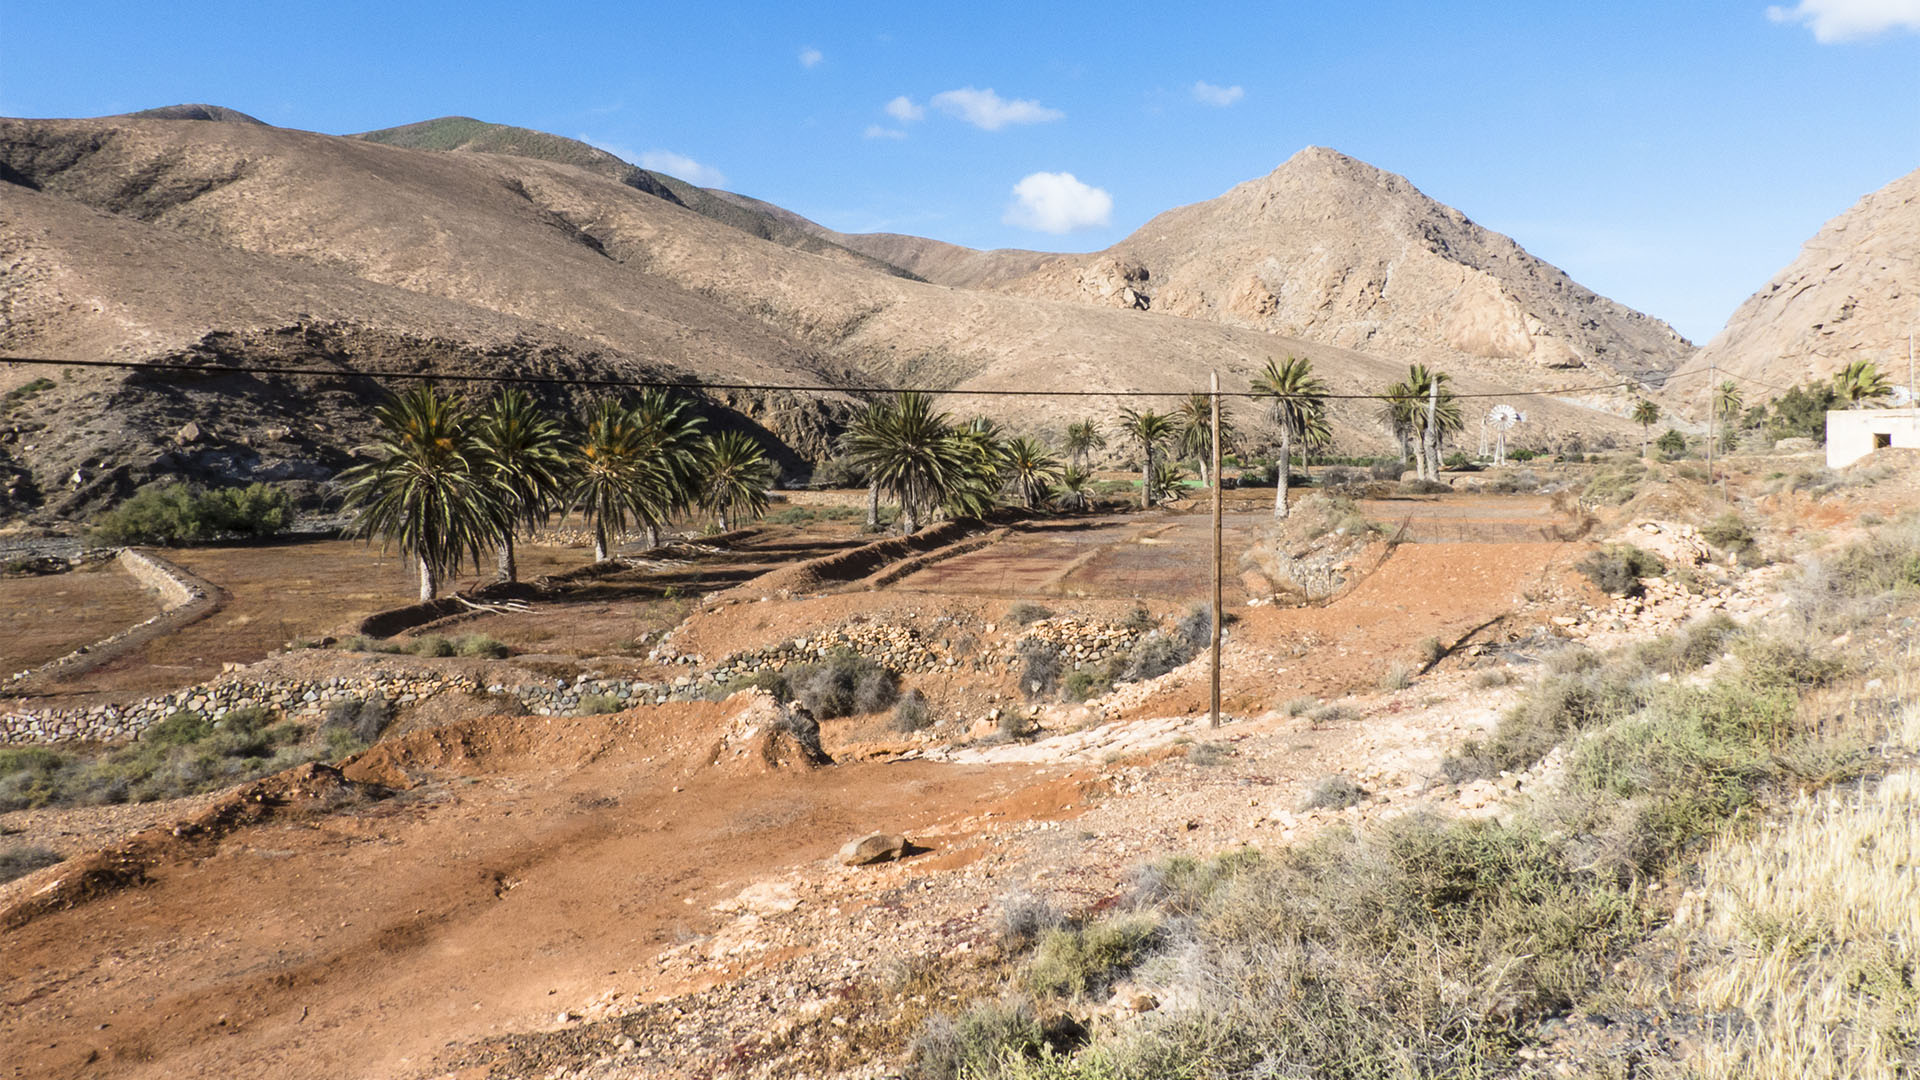 Landwirtschaft auf Fuerteventura – Trockenlandbau mit ausgeklügelten Gavias, Wasserspeicher, Kanälen.